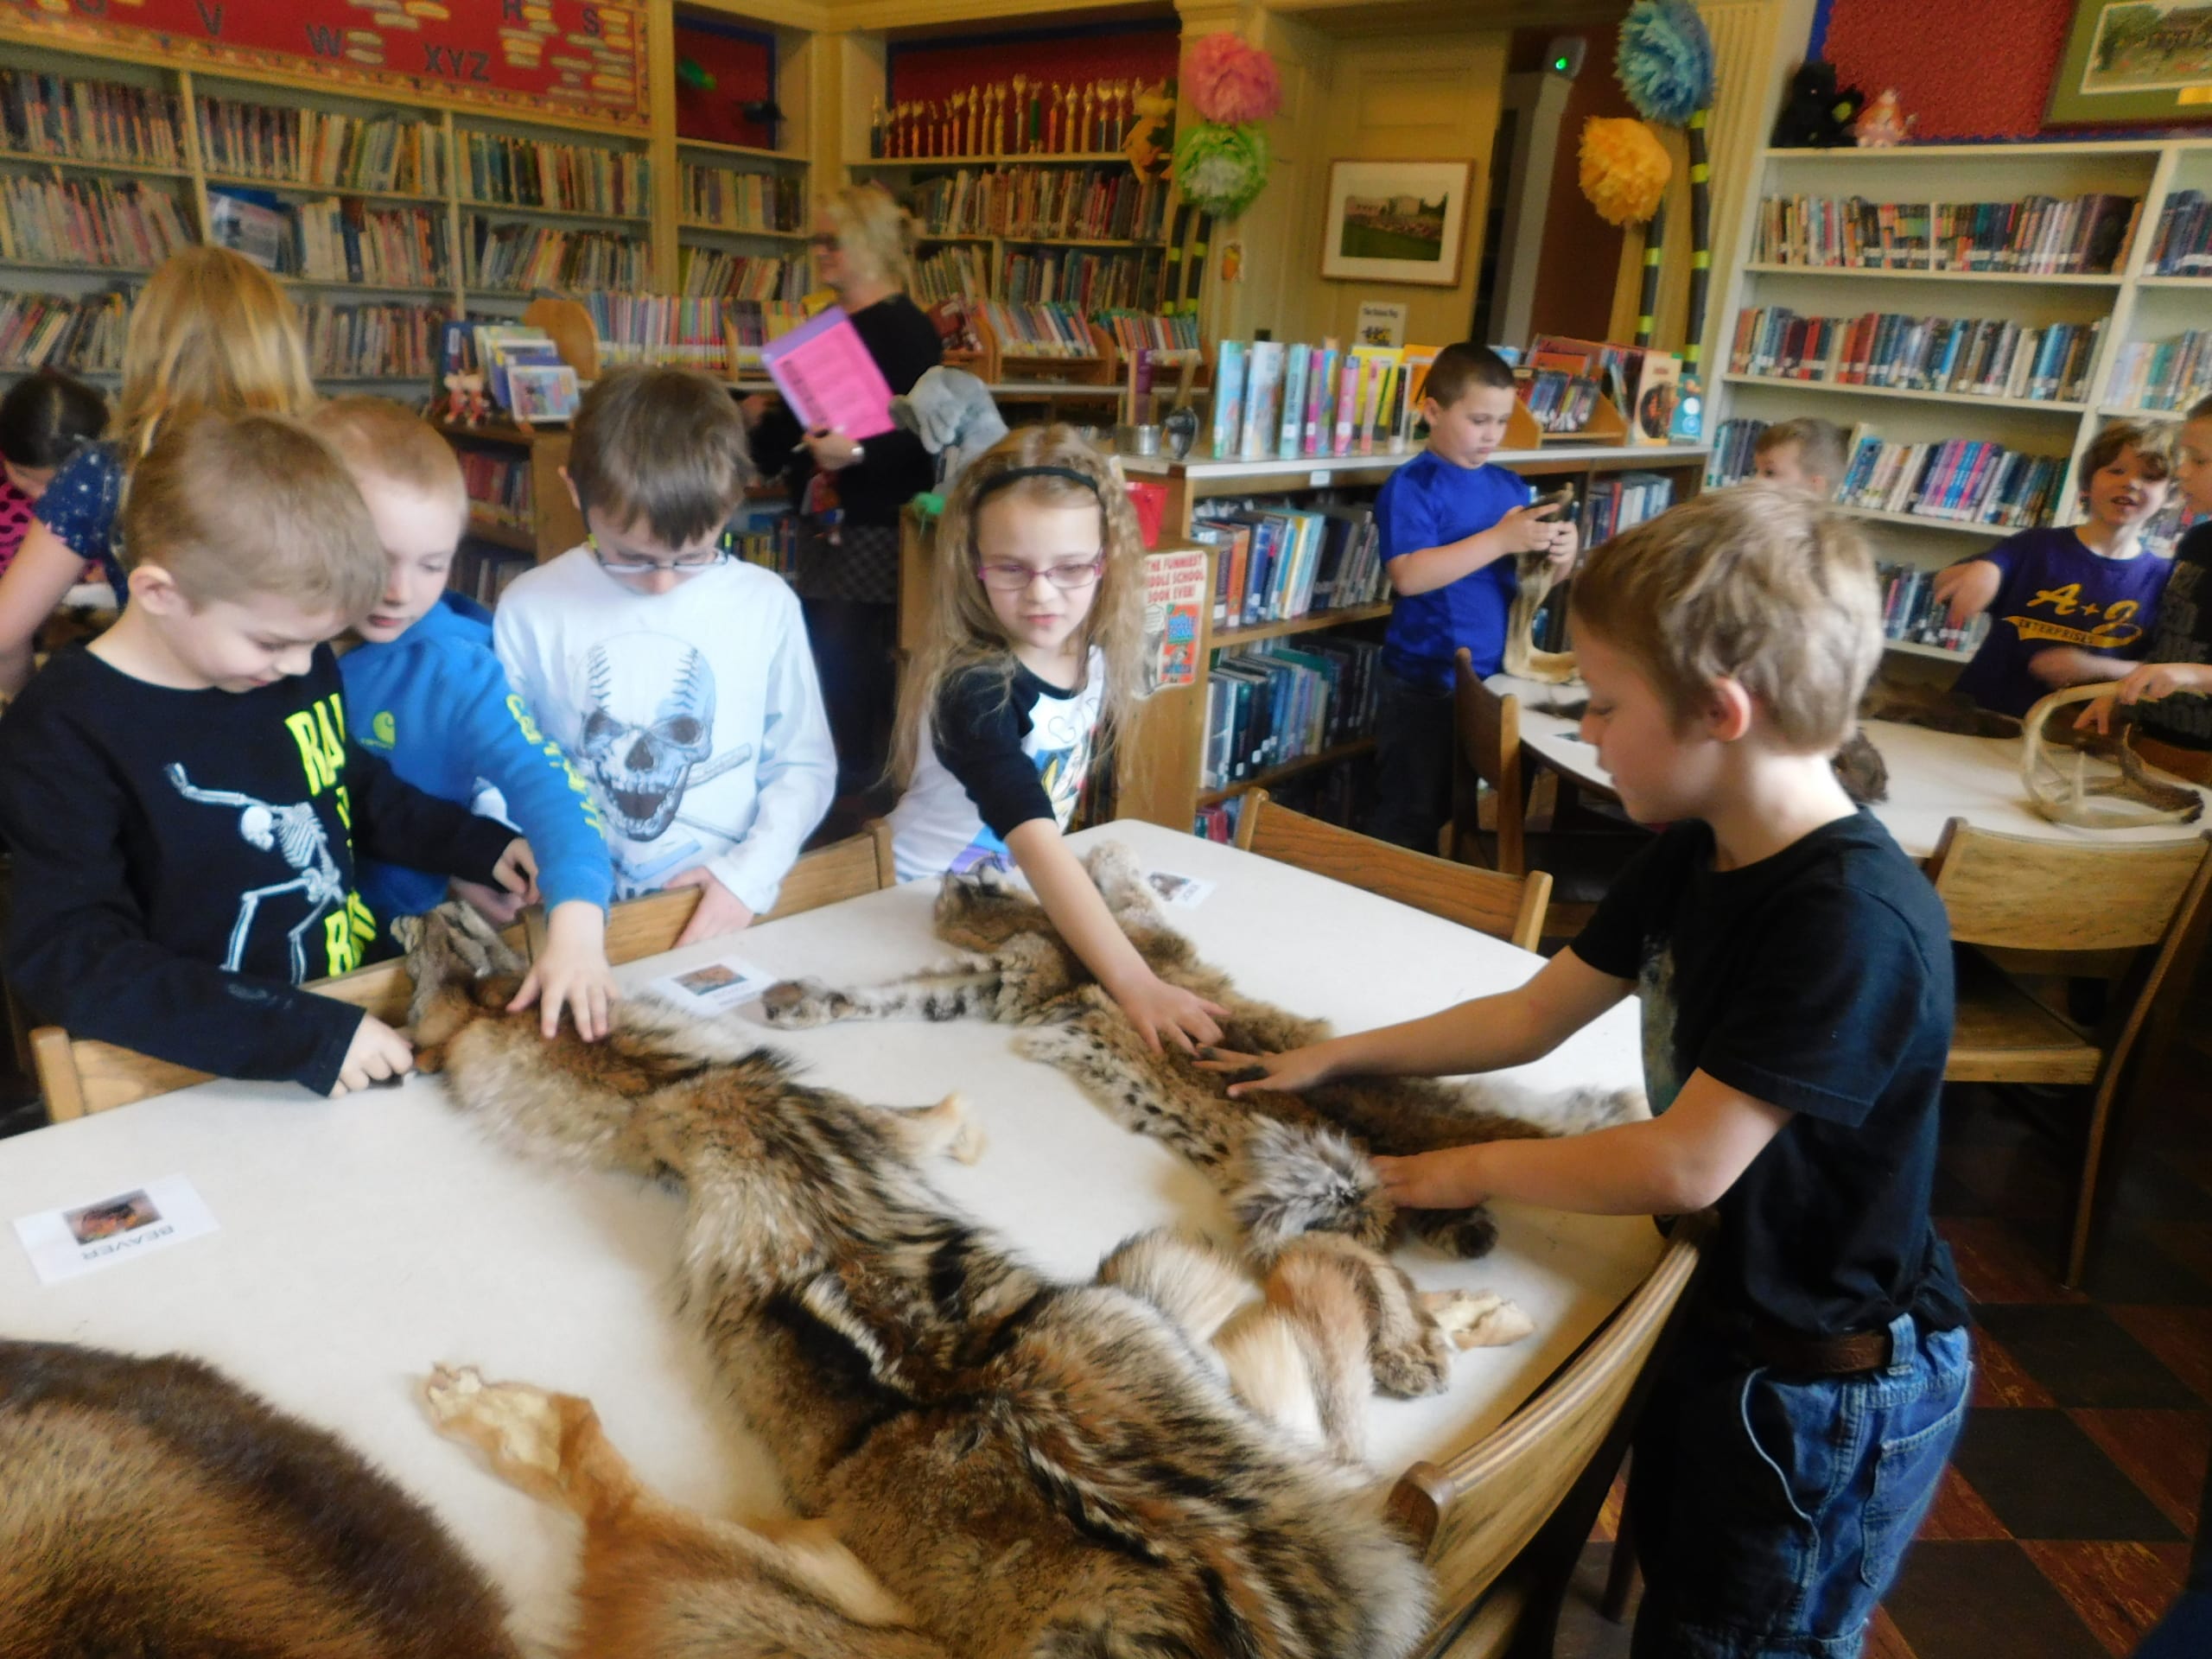 Un groupe de jeunes élèves dans leur bibliothèque scolaire caressant la fourrure de diverses peaux d'animaux, apportées à leur école à des fins éducatives par le programme de sensibilisation d'ADKX.